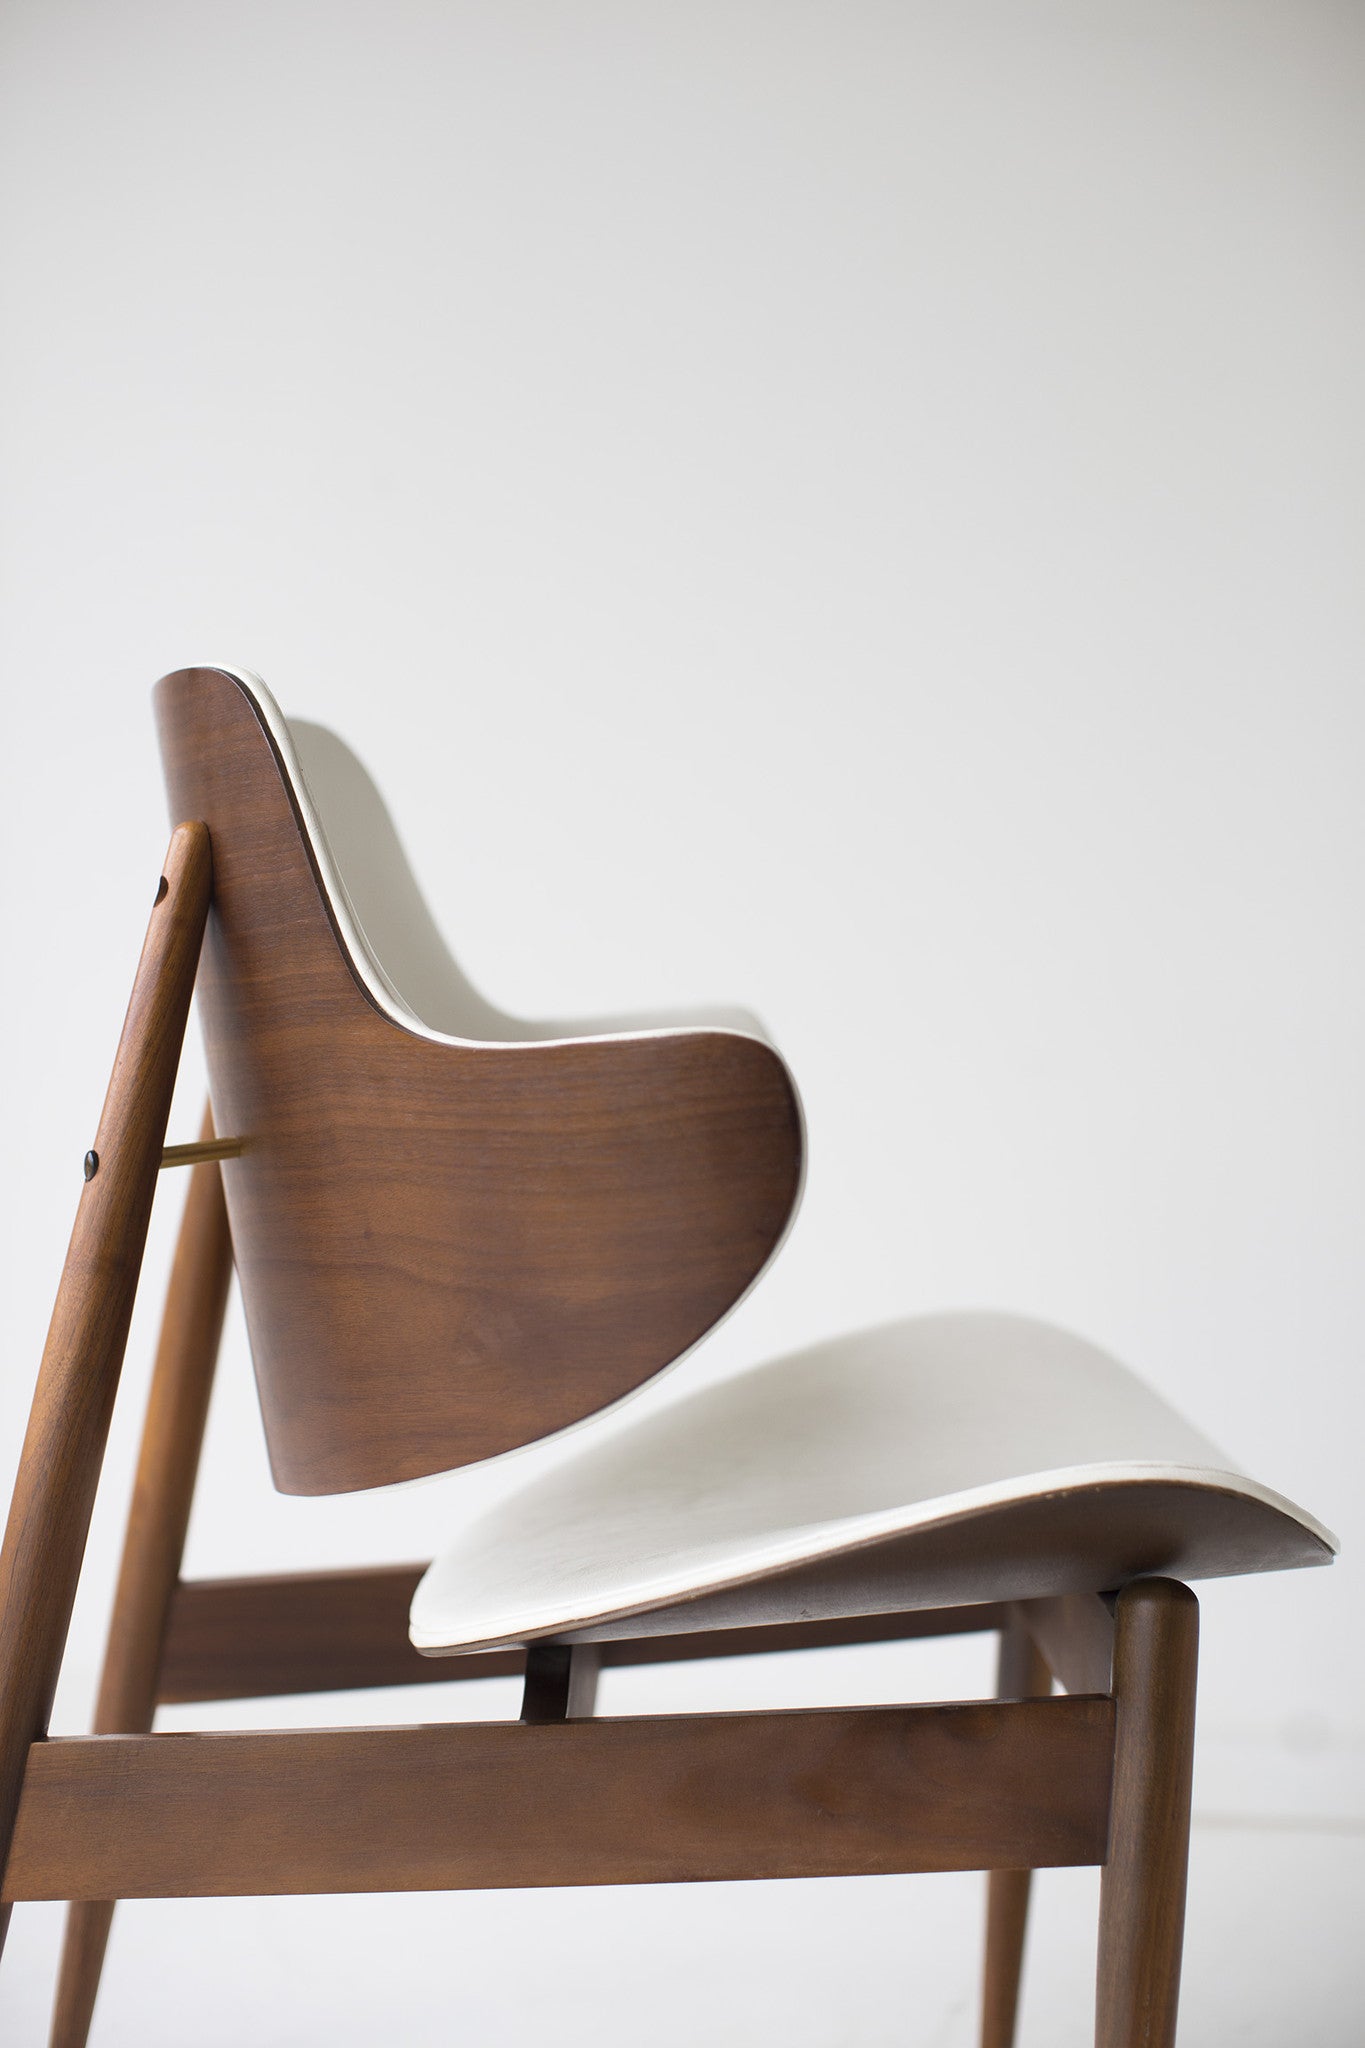 Seymour J. Wiener Lounge Chair for Kodawood - 01181613